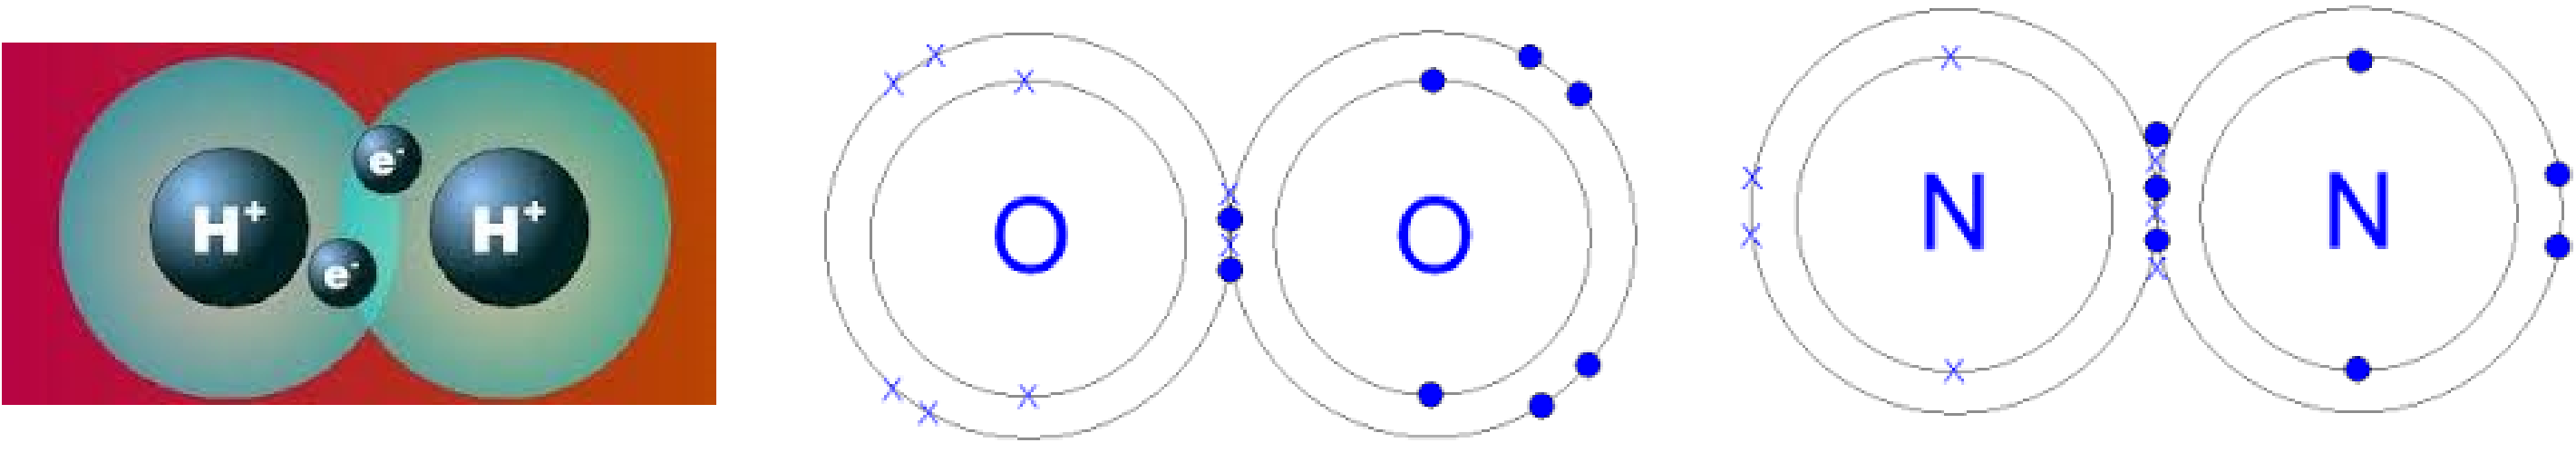 Elemmolekulák kialakulása Elemek molekuláiban (H 2, Cl 2, O 2, N 2 ) a közös elektronok